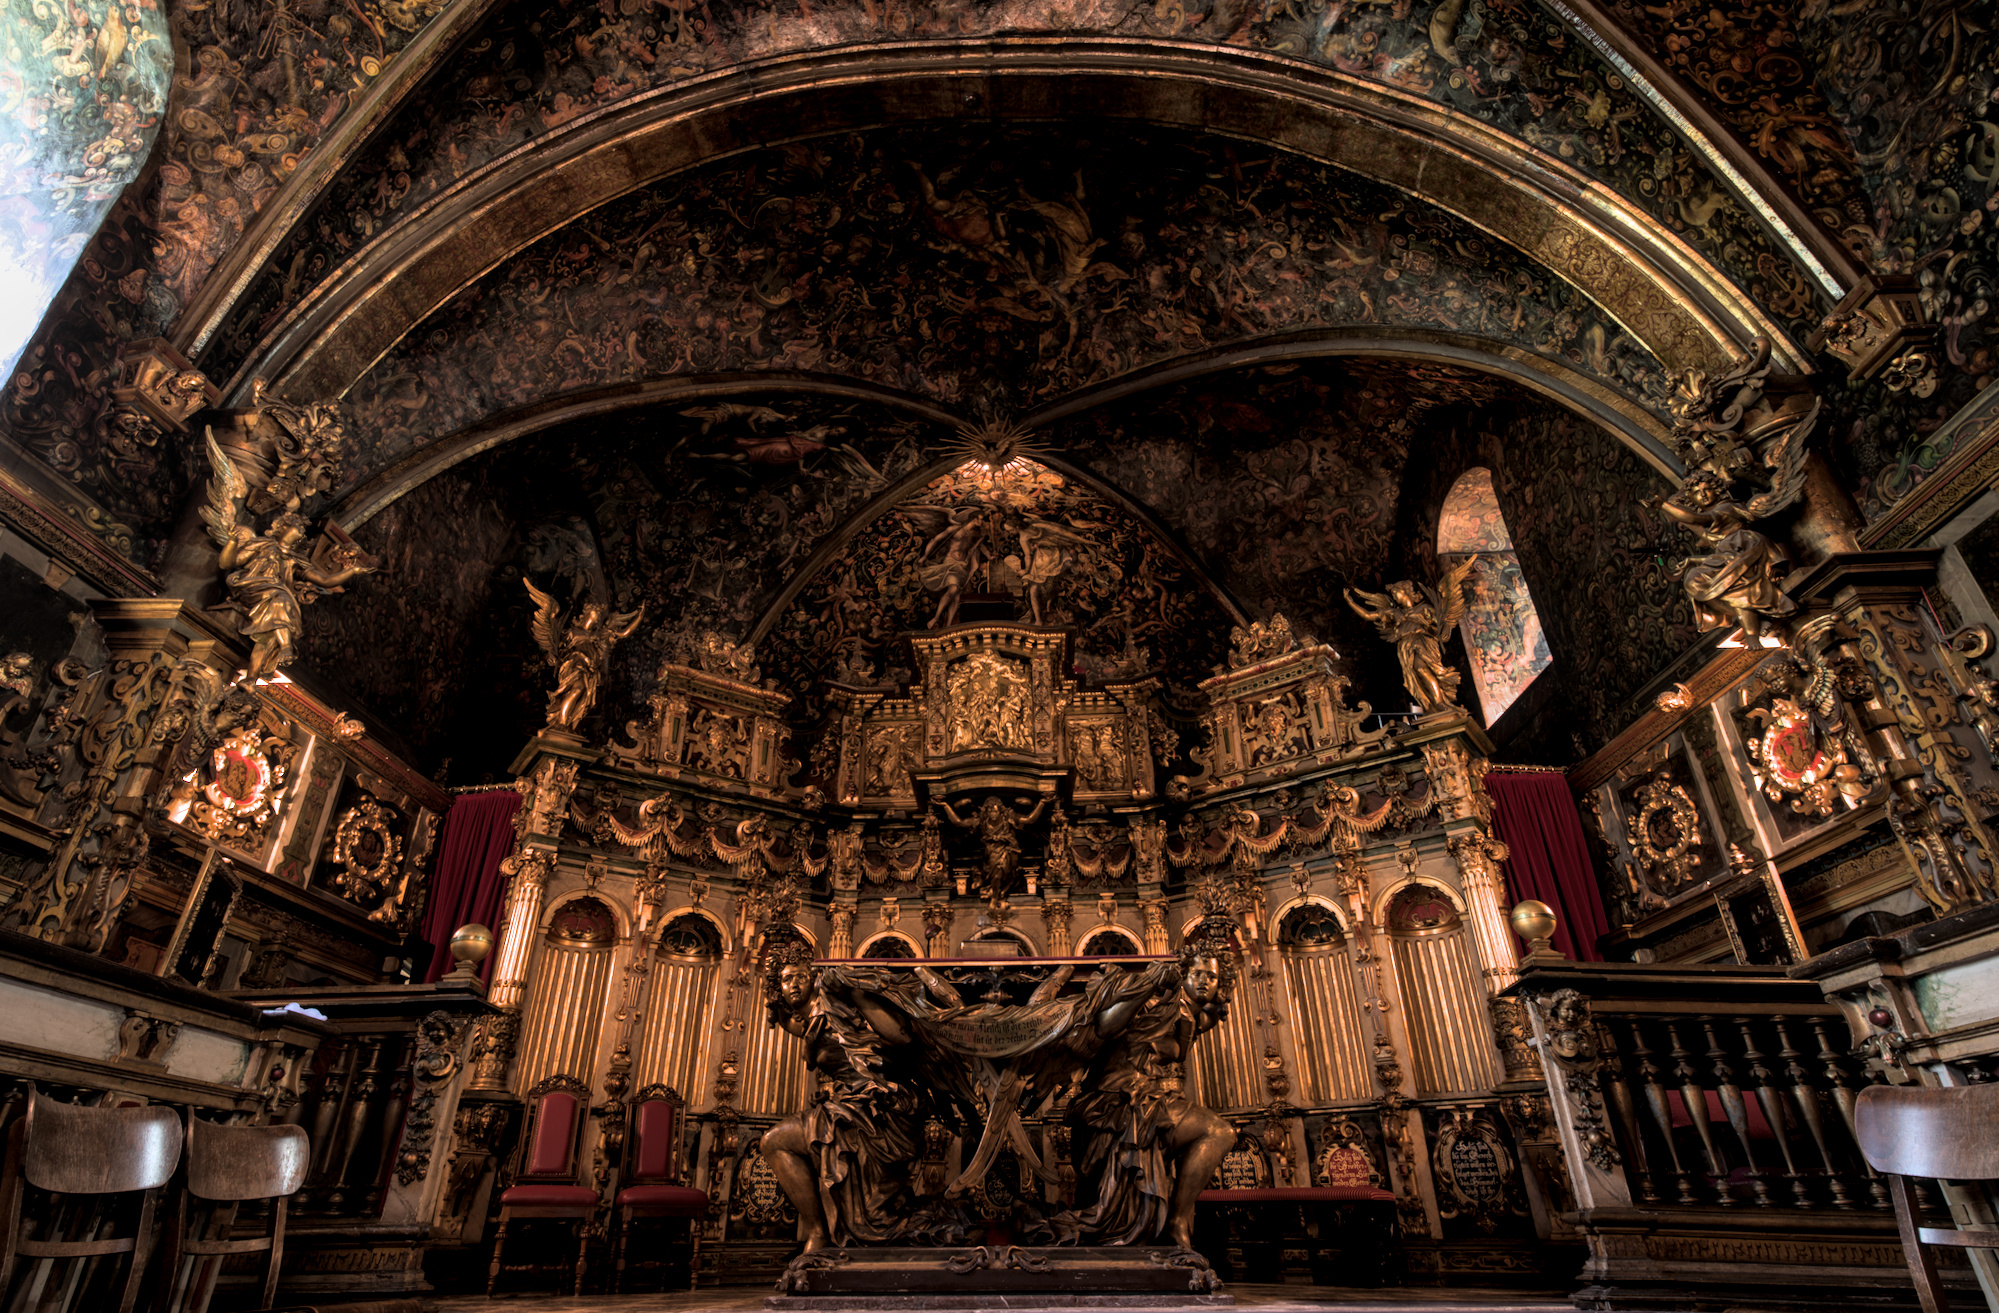 Der Altar in einer sehr Prunkvollen Schlosskapelle. Die Wände und die Decke sind aufwendig verziert und bemahlt